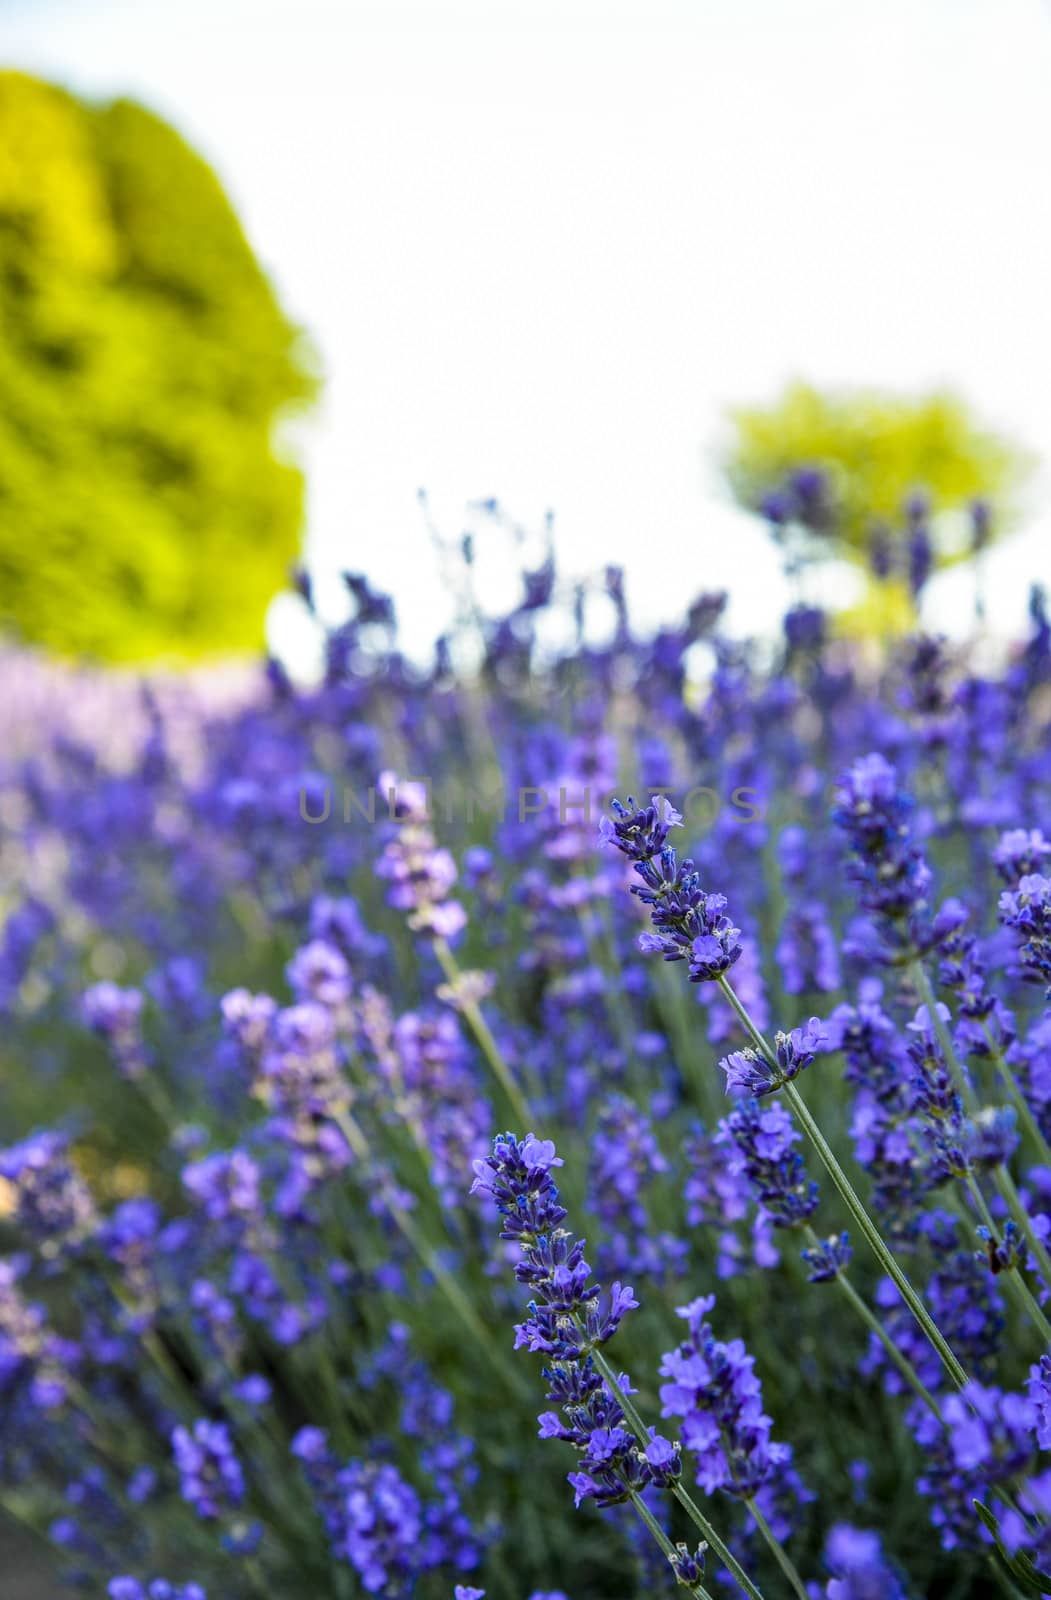 Lavender flower garden4 by gjeerawut